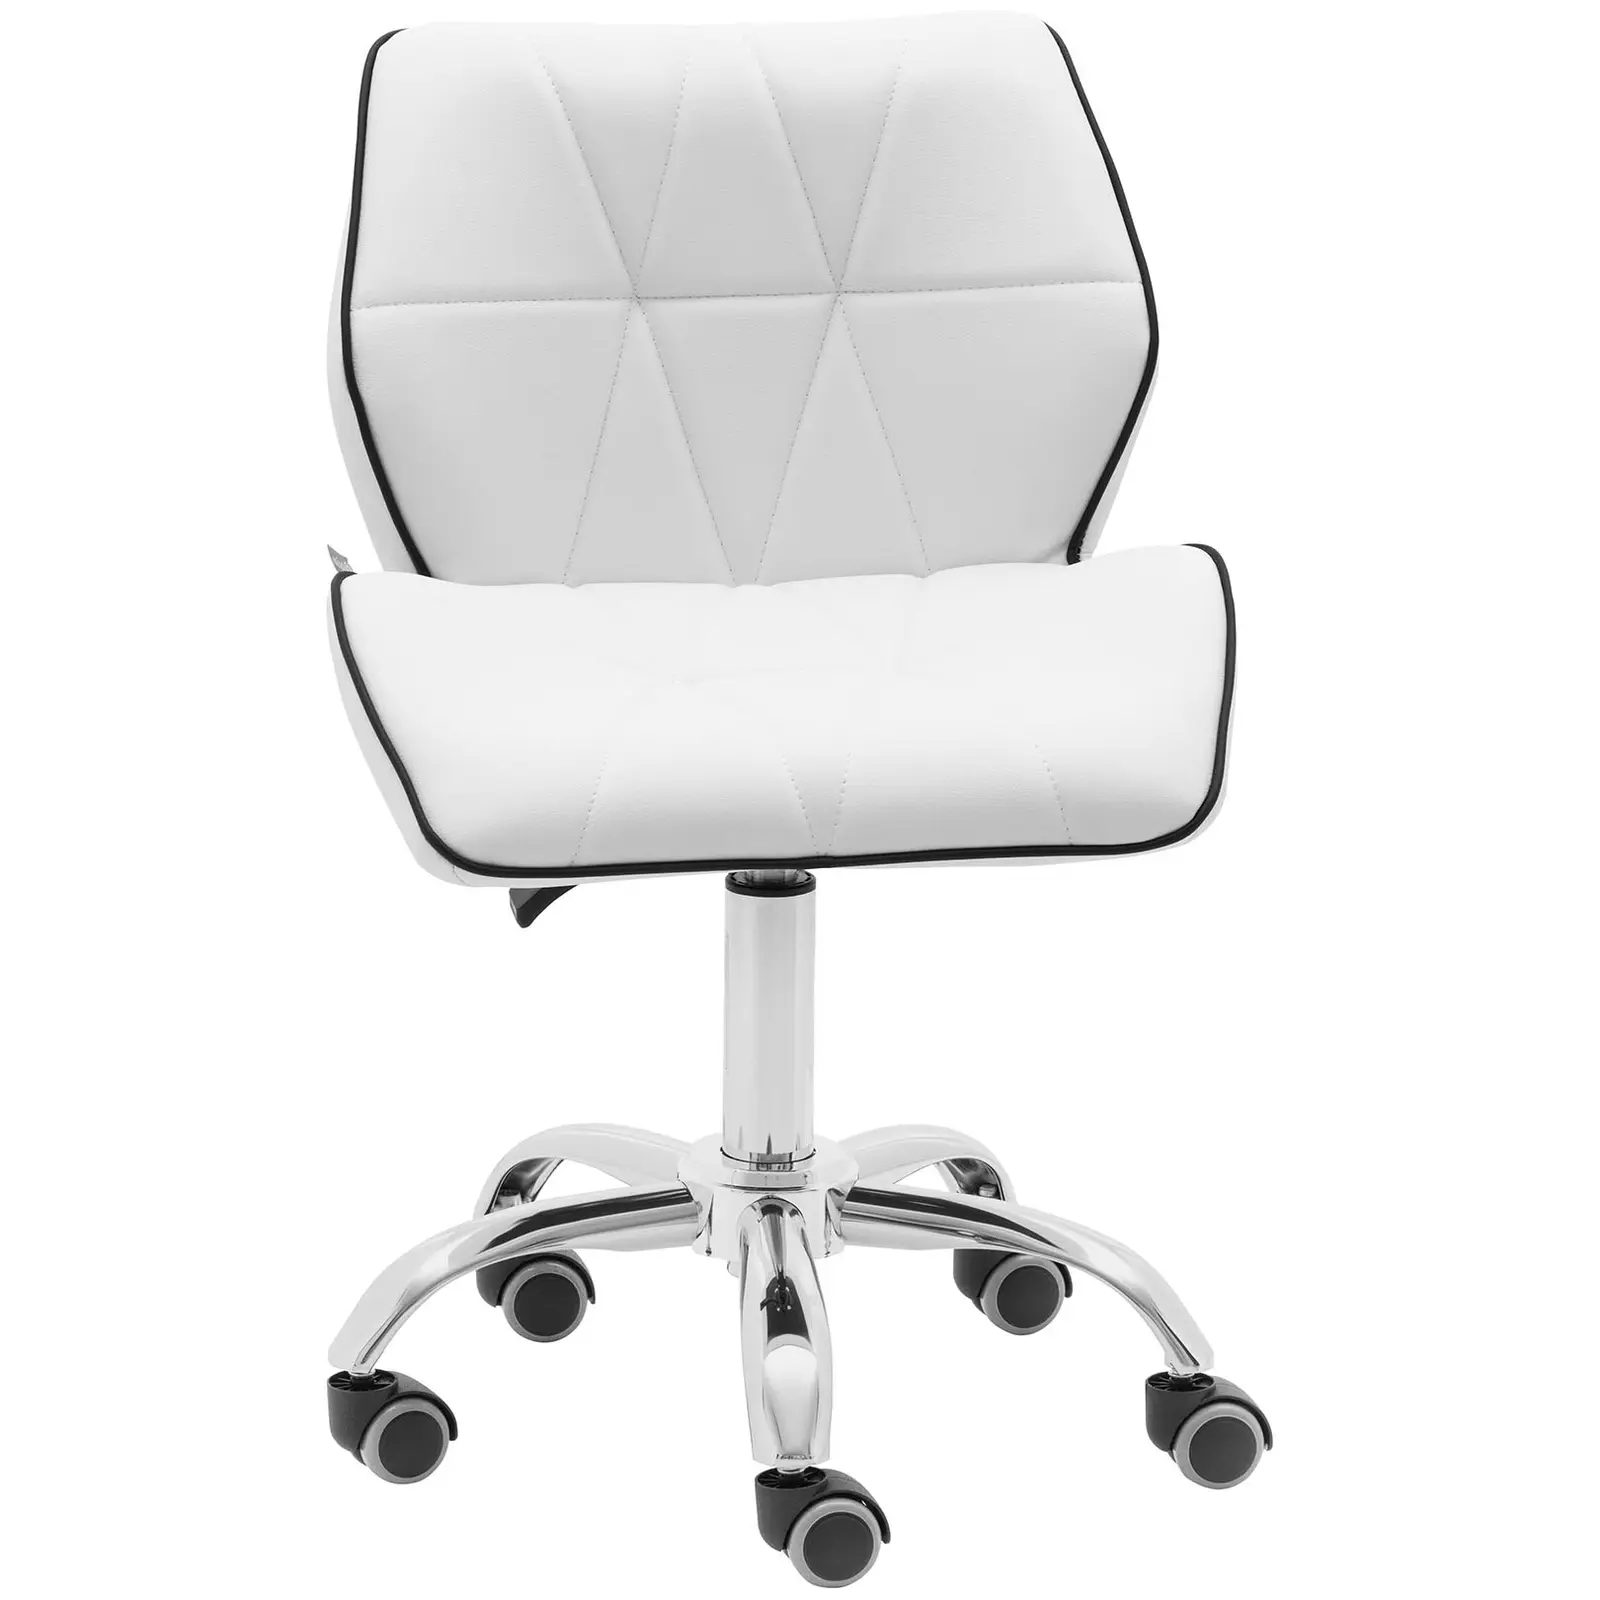 B-zboží Otočná židle na kolečkách s opěradlem - 45–59 cm - 150 kg - bílá